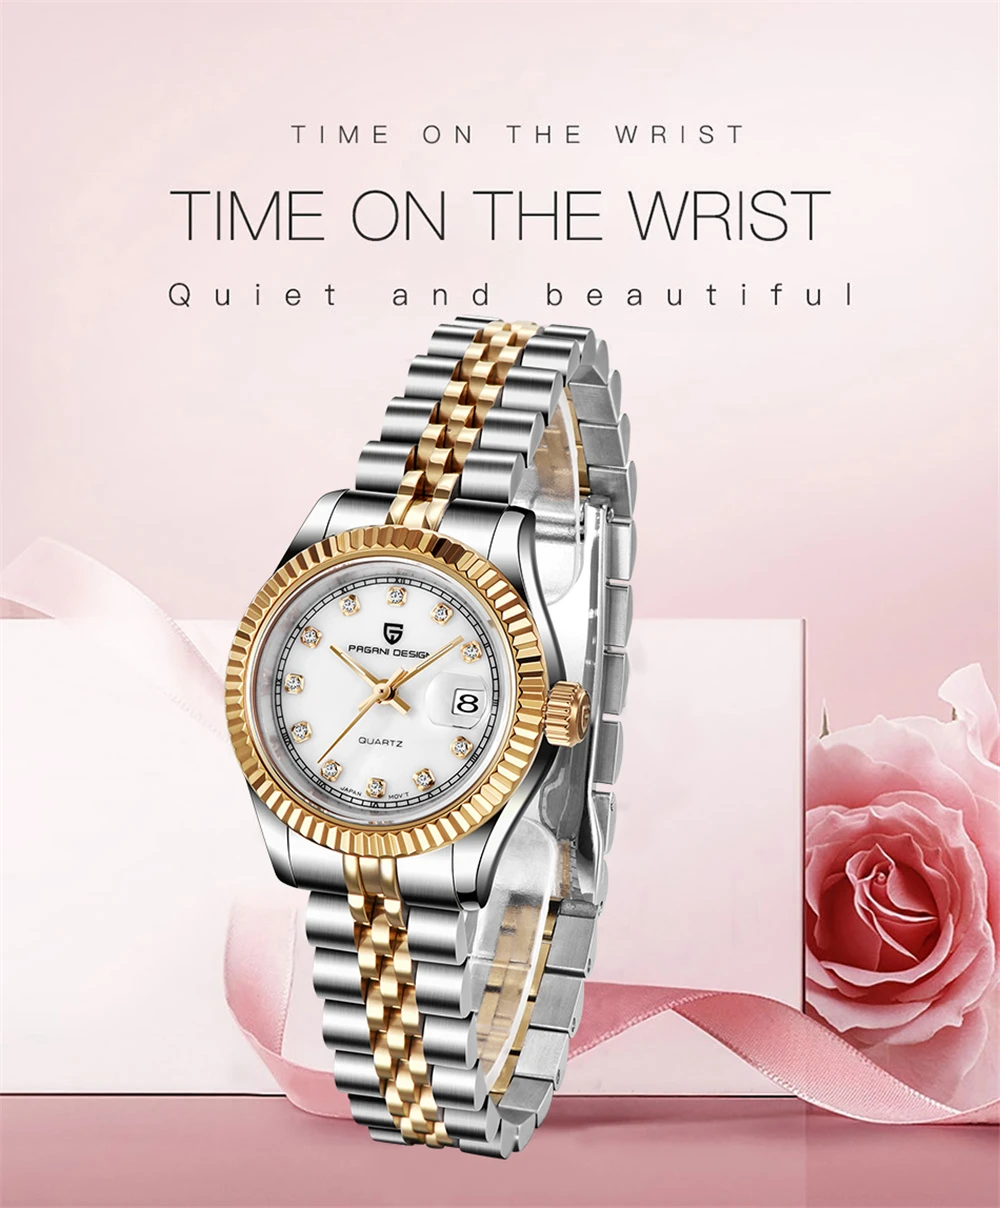 PAGANI Дизайн новые женские часы лучший бренд класса люкс модные женские часы из нержавеющей стали водонепроницаемые спортивные часы Relogio Feminino